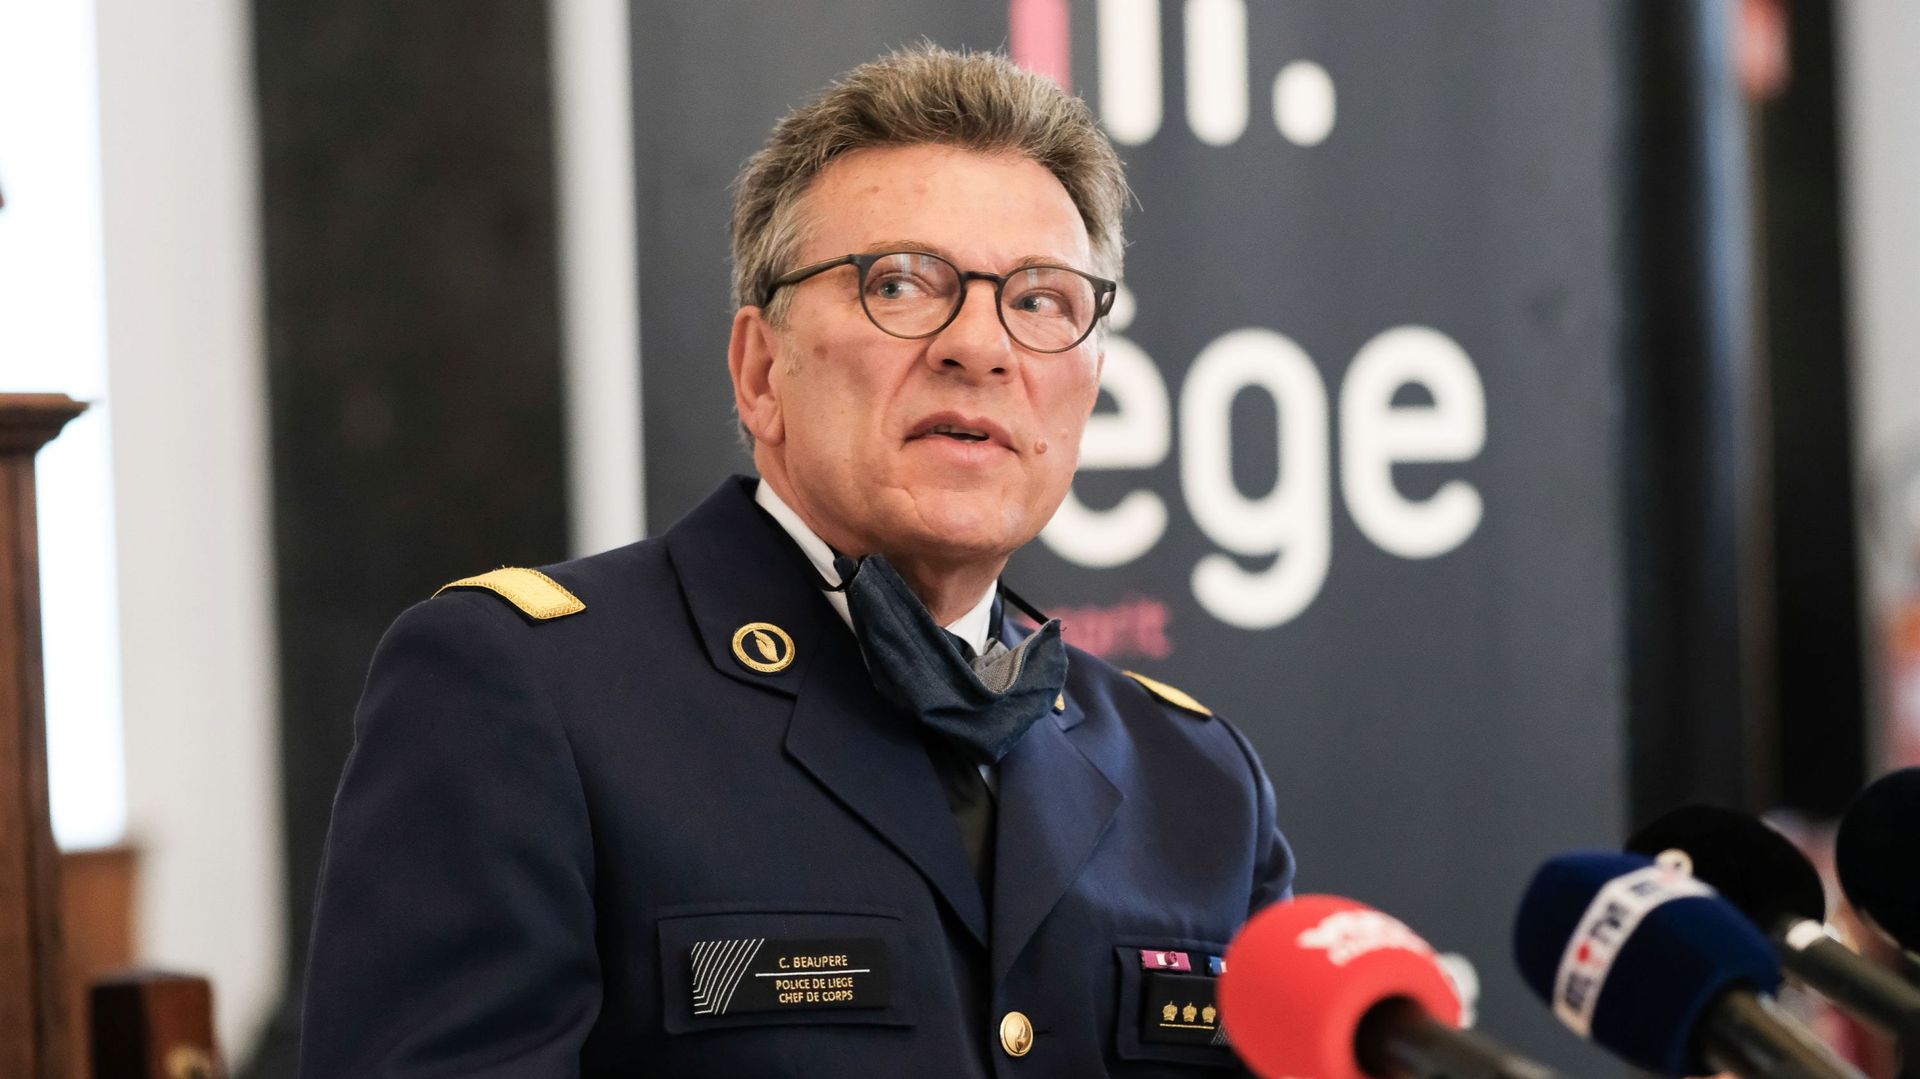 Le chef de la police Christian Beaupere photographié lors d'une conférence de presse suite aux émeutes dans le centre ville de Liège, dimanche 14 mars 2021.